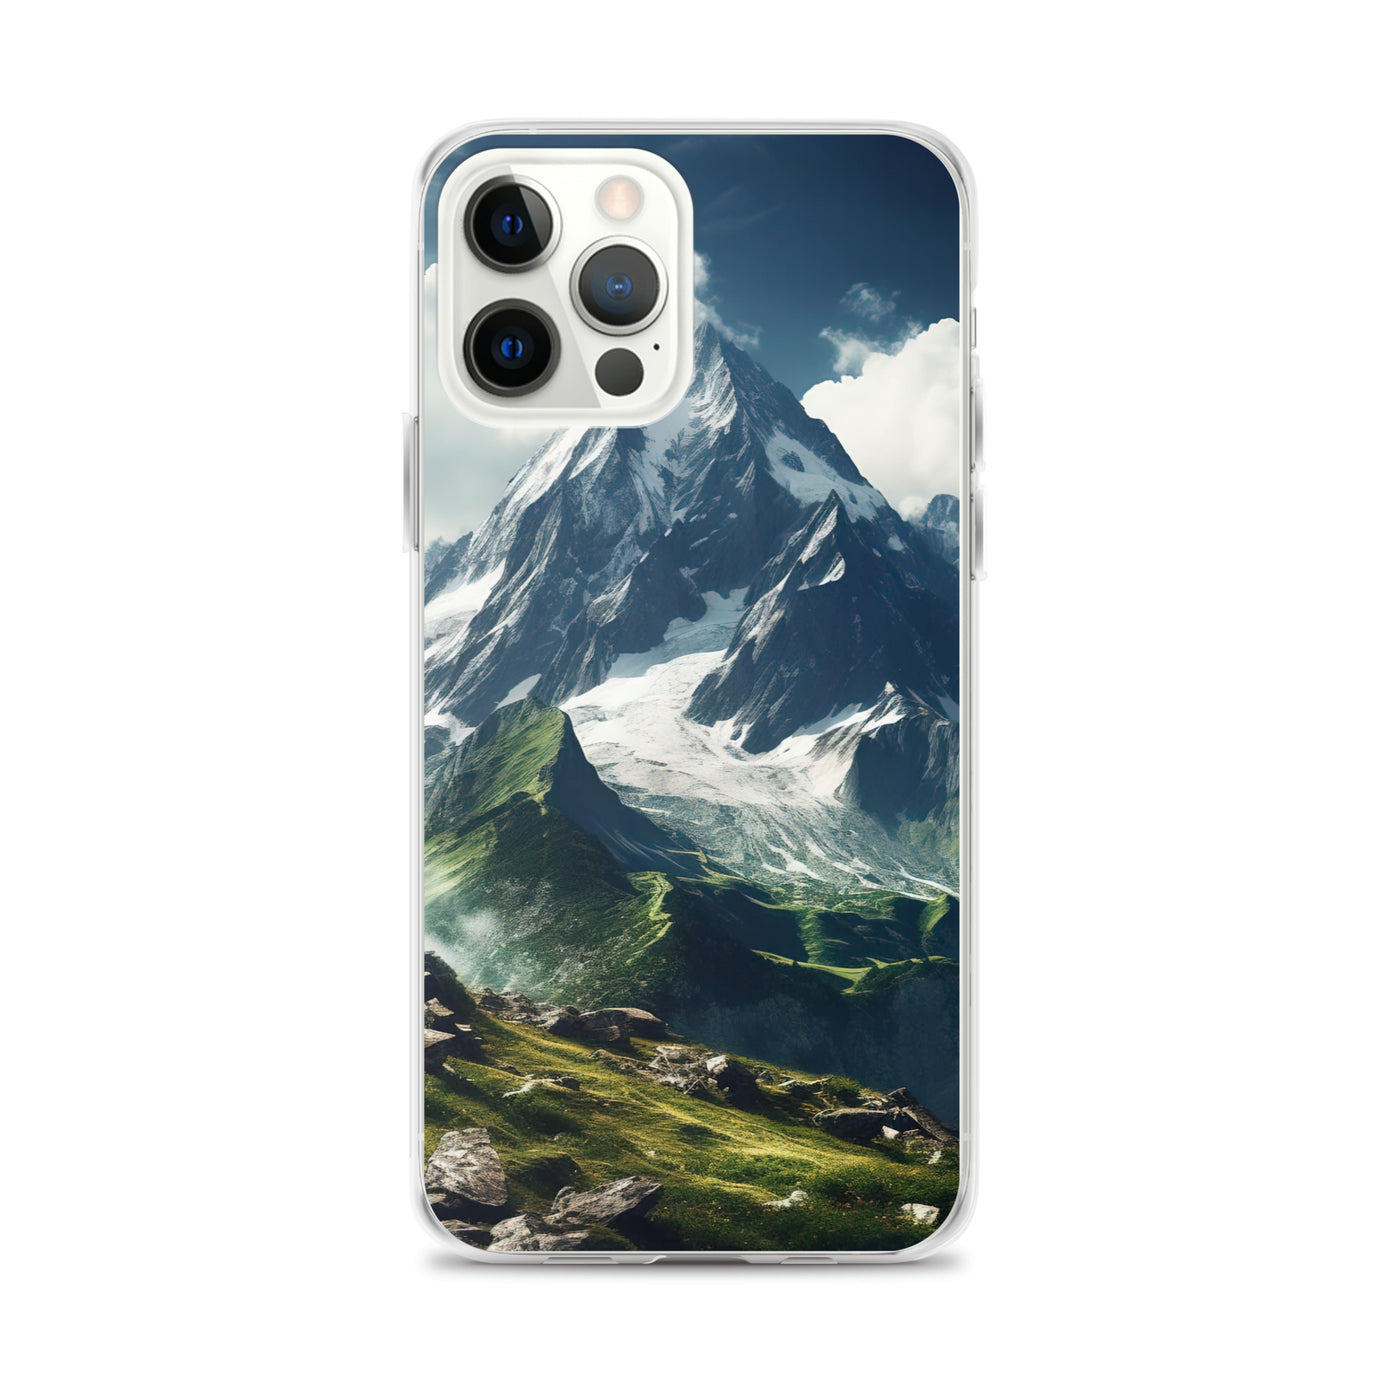 Gigantischer Berg - Landschaftsmalerei - iPhone Schutzhülle (durchsichtig) berge xxx iPhone 12 Pro Max